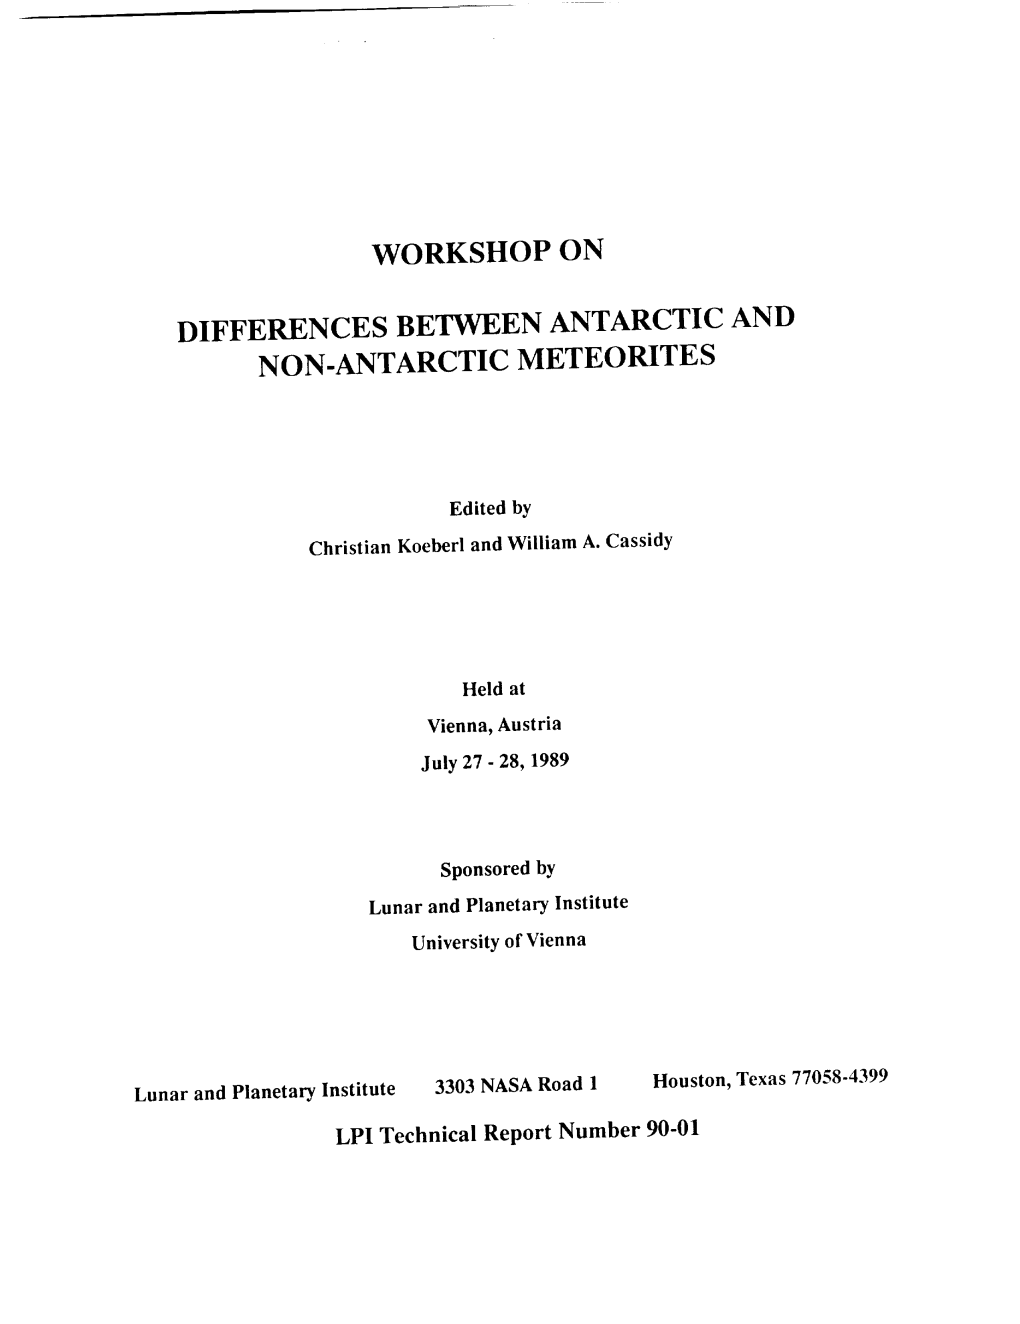 Workshop on Differences Between Antarctic and Non-Antarctic Meteorites